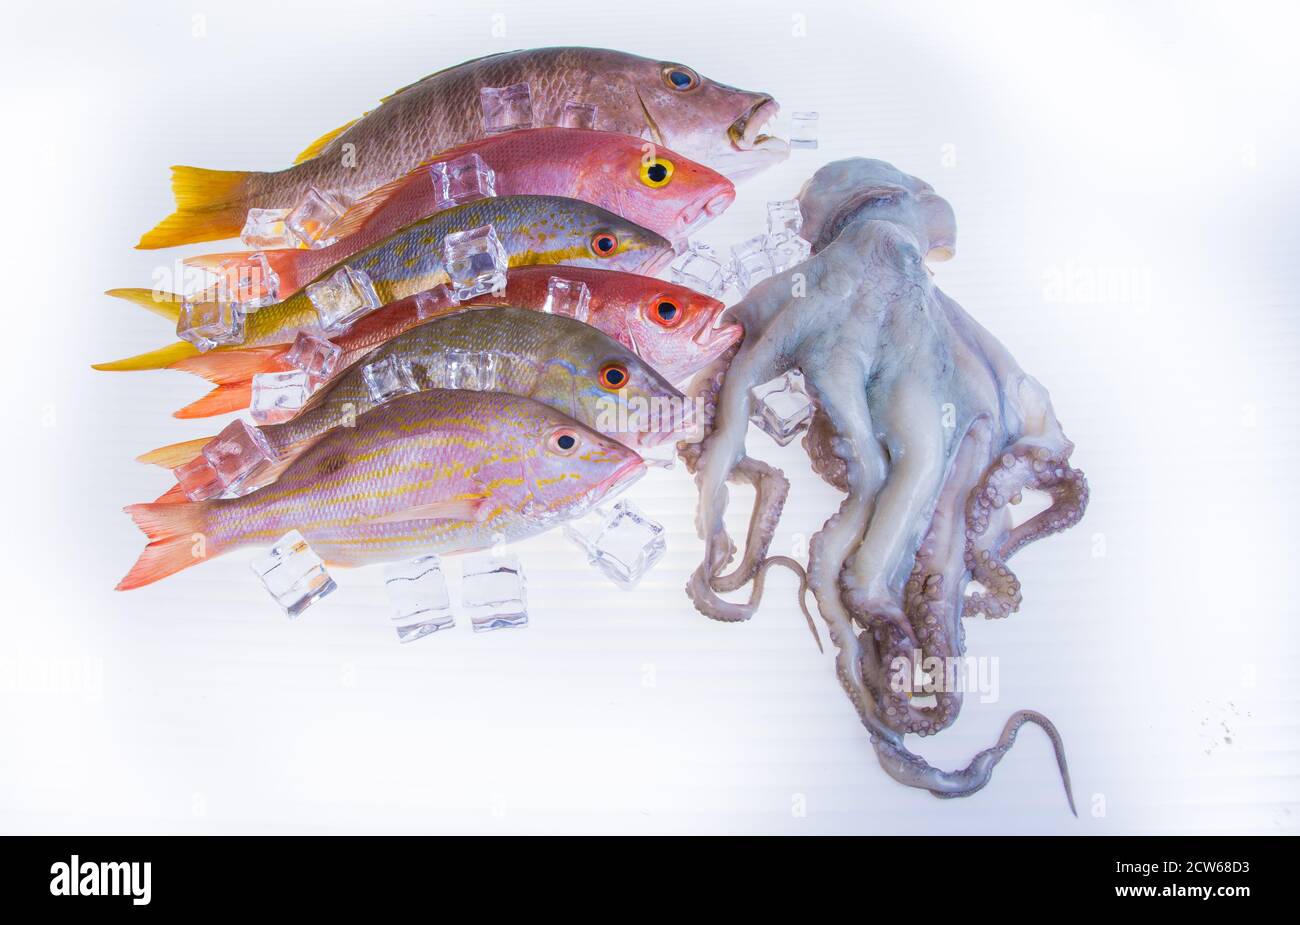 Fisch-frisch-fangen-karibik-Meeresfrüchte-isoliert-auf-weiß-Hintergrund Stockfoto